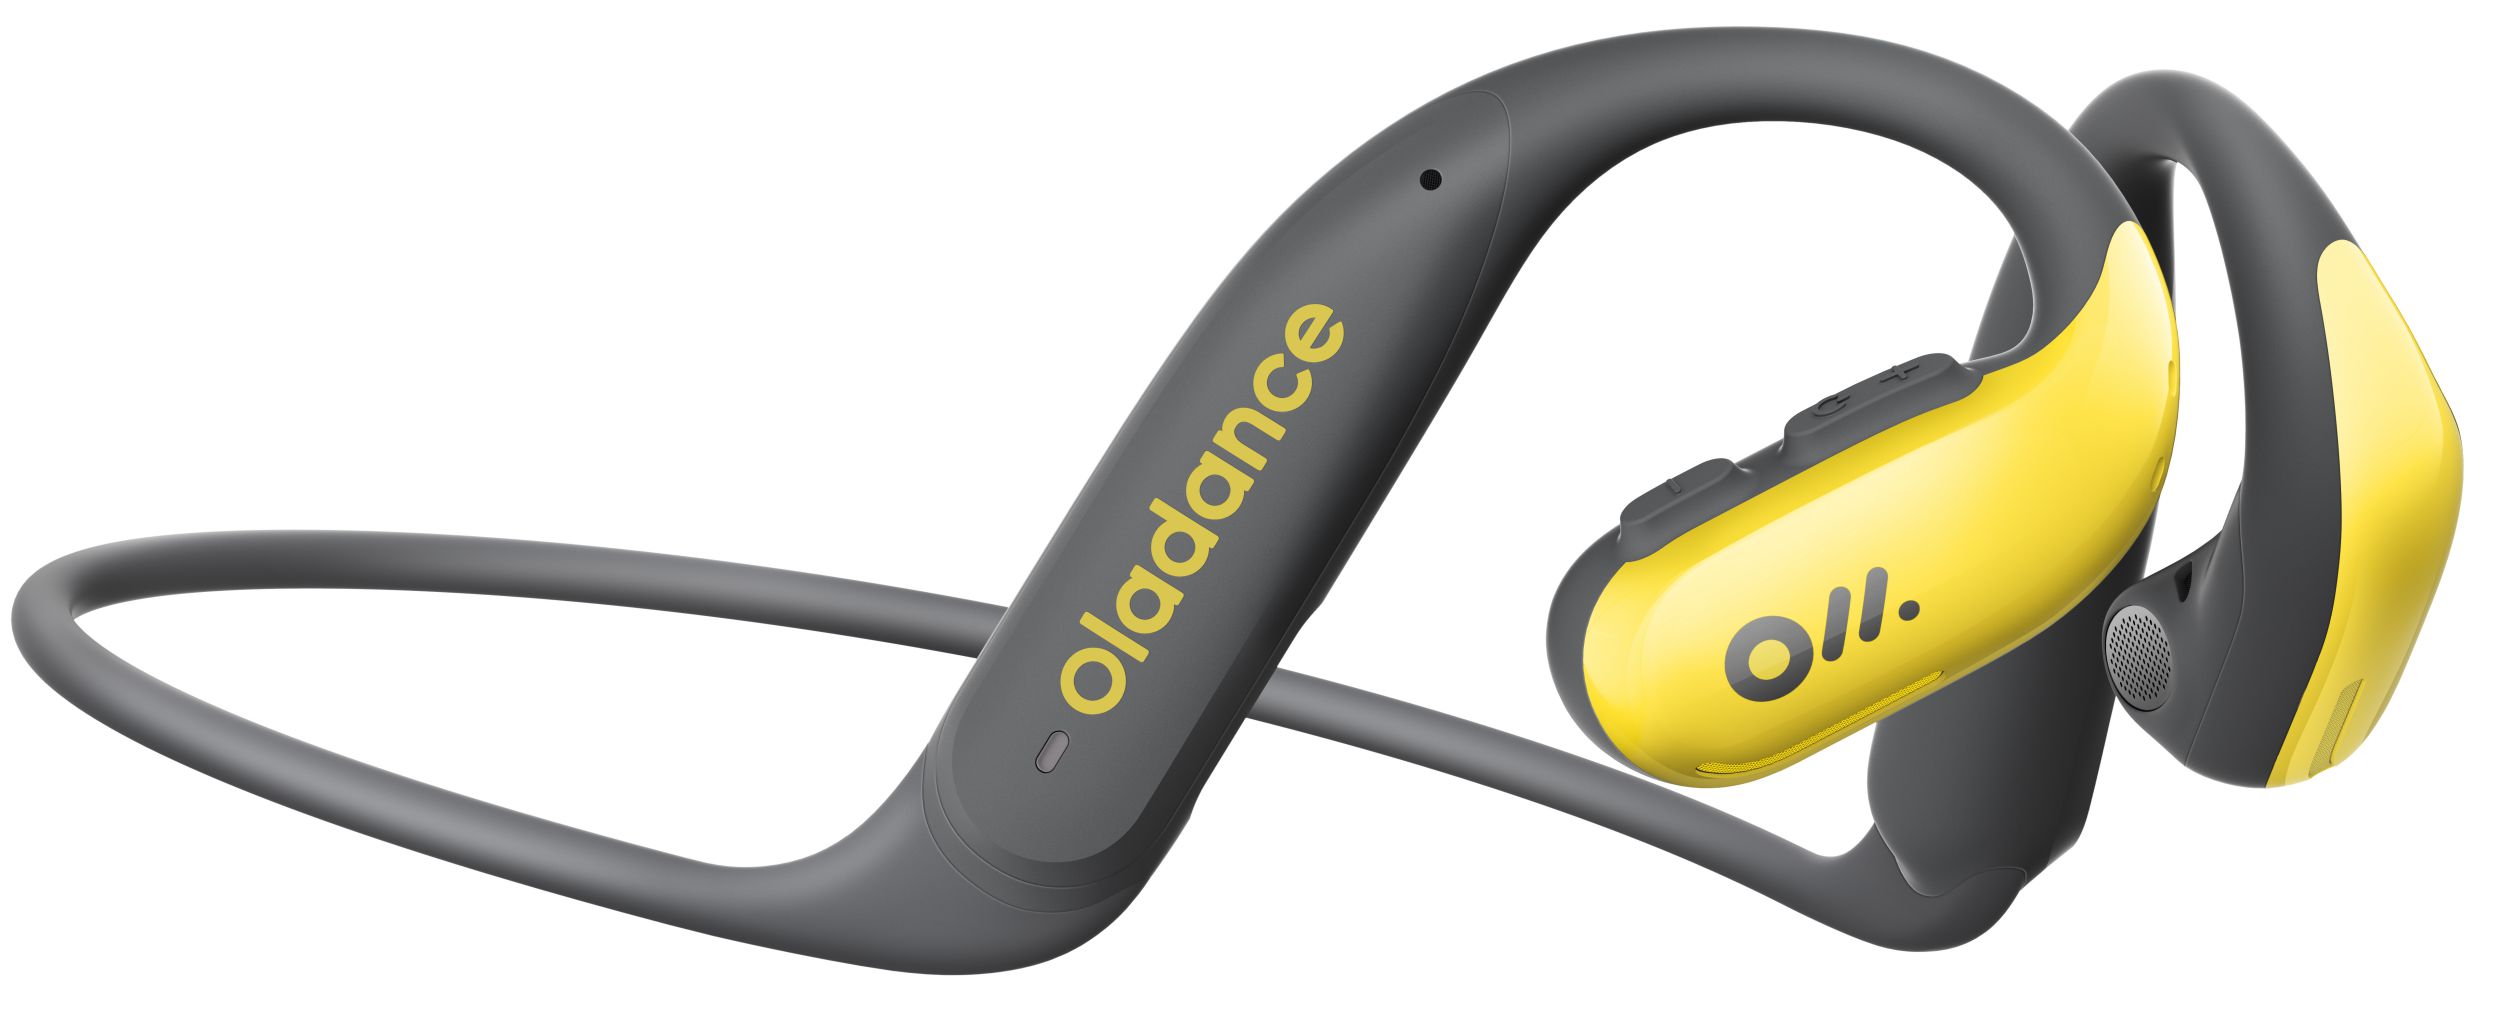 Oladance debuts waterproof OWS Sports open-ear headphones ...